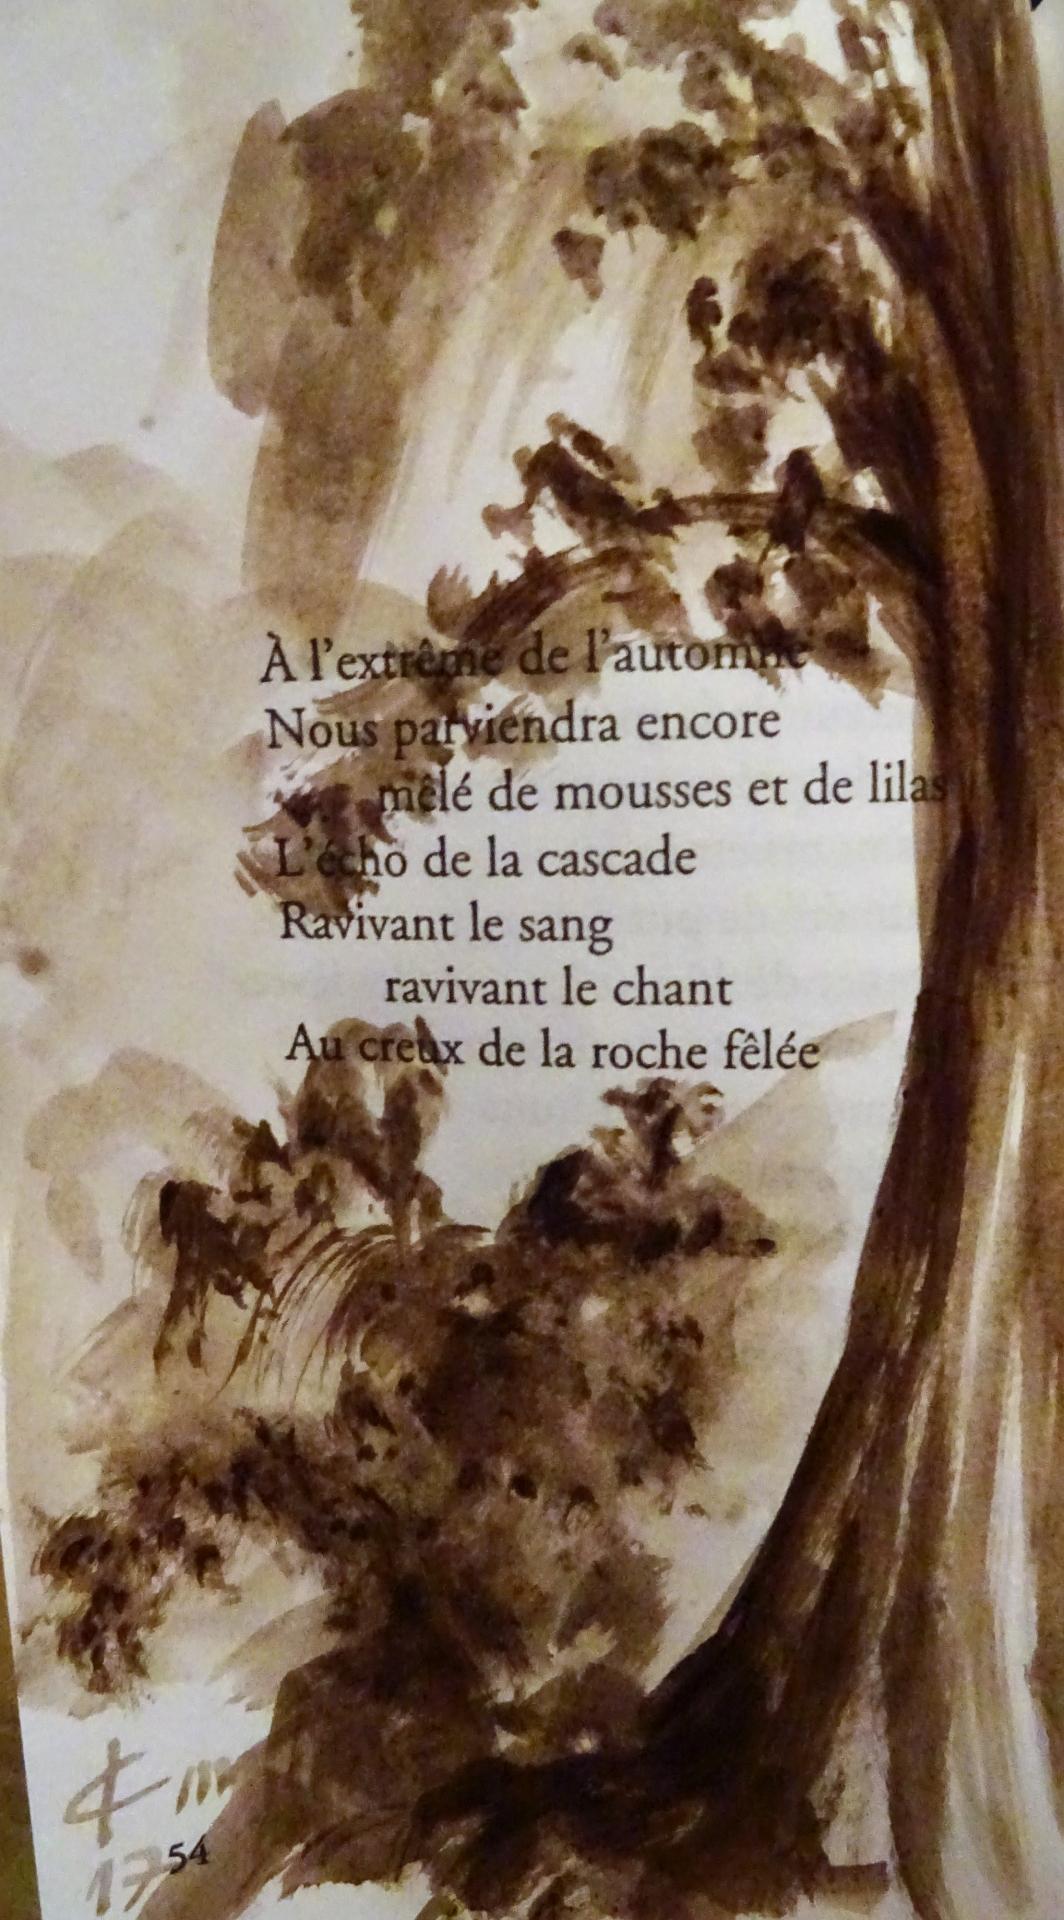 Poeme de francois cheng illustre dessin au lavis de jean joseph chevalier 165